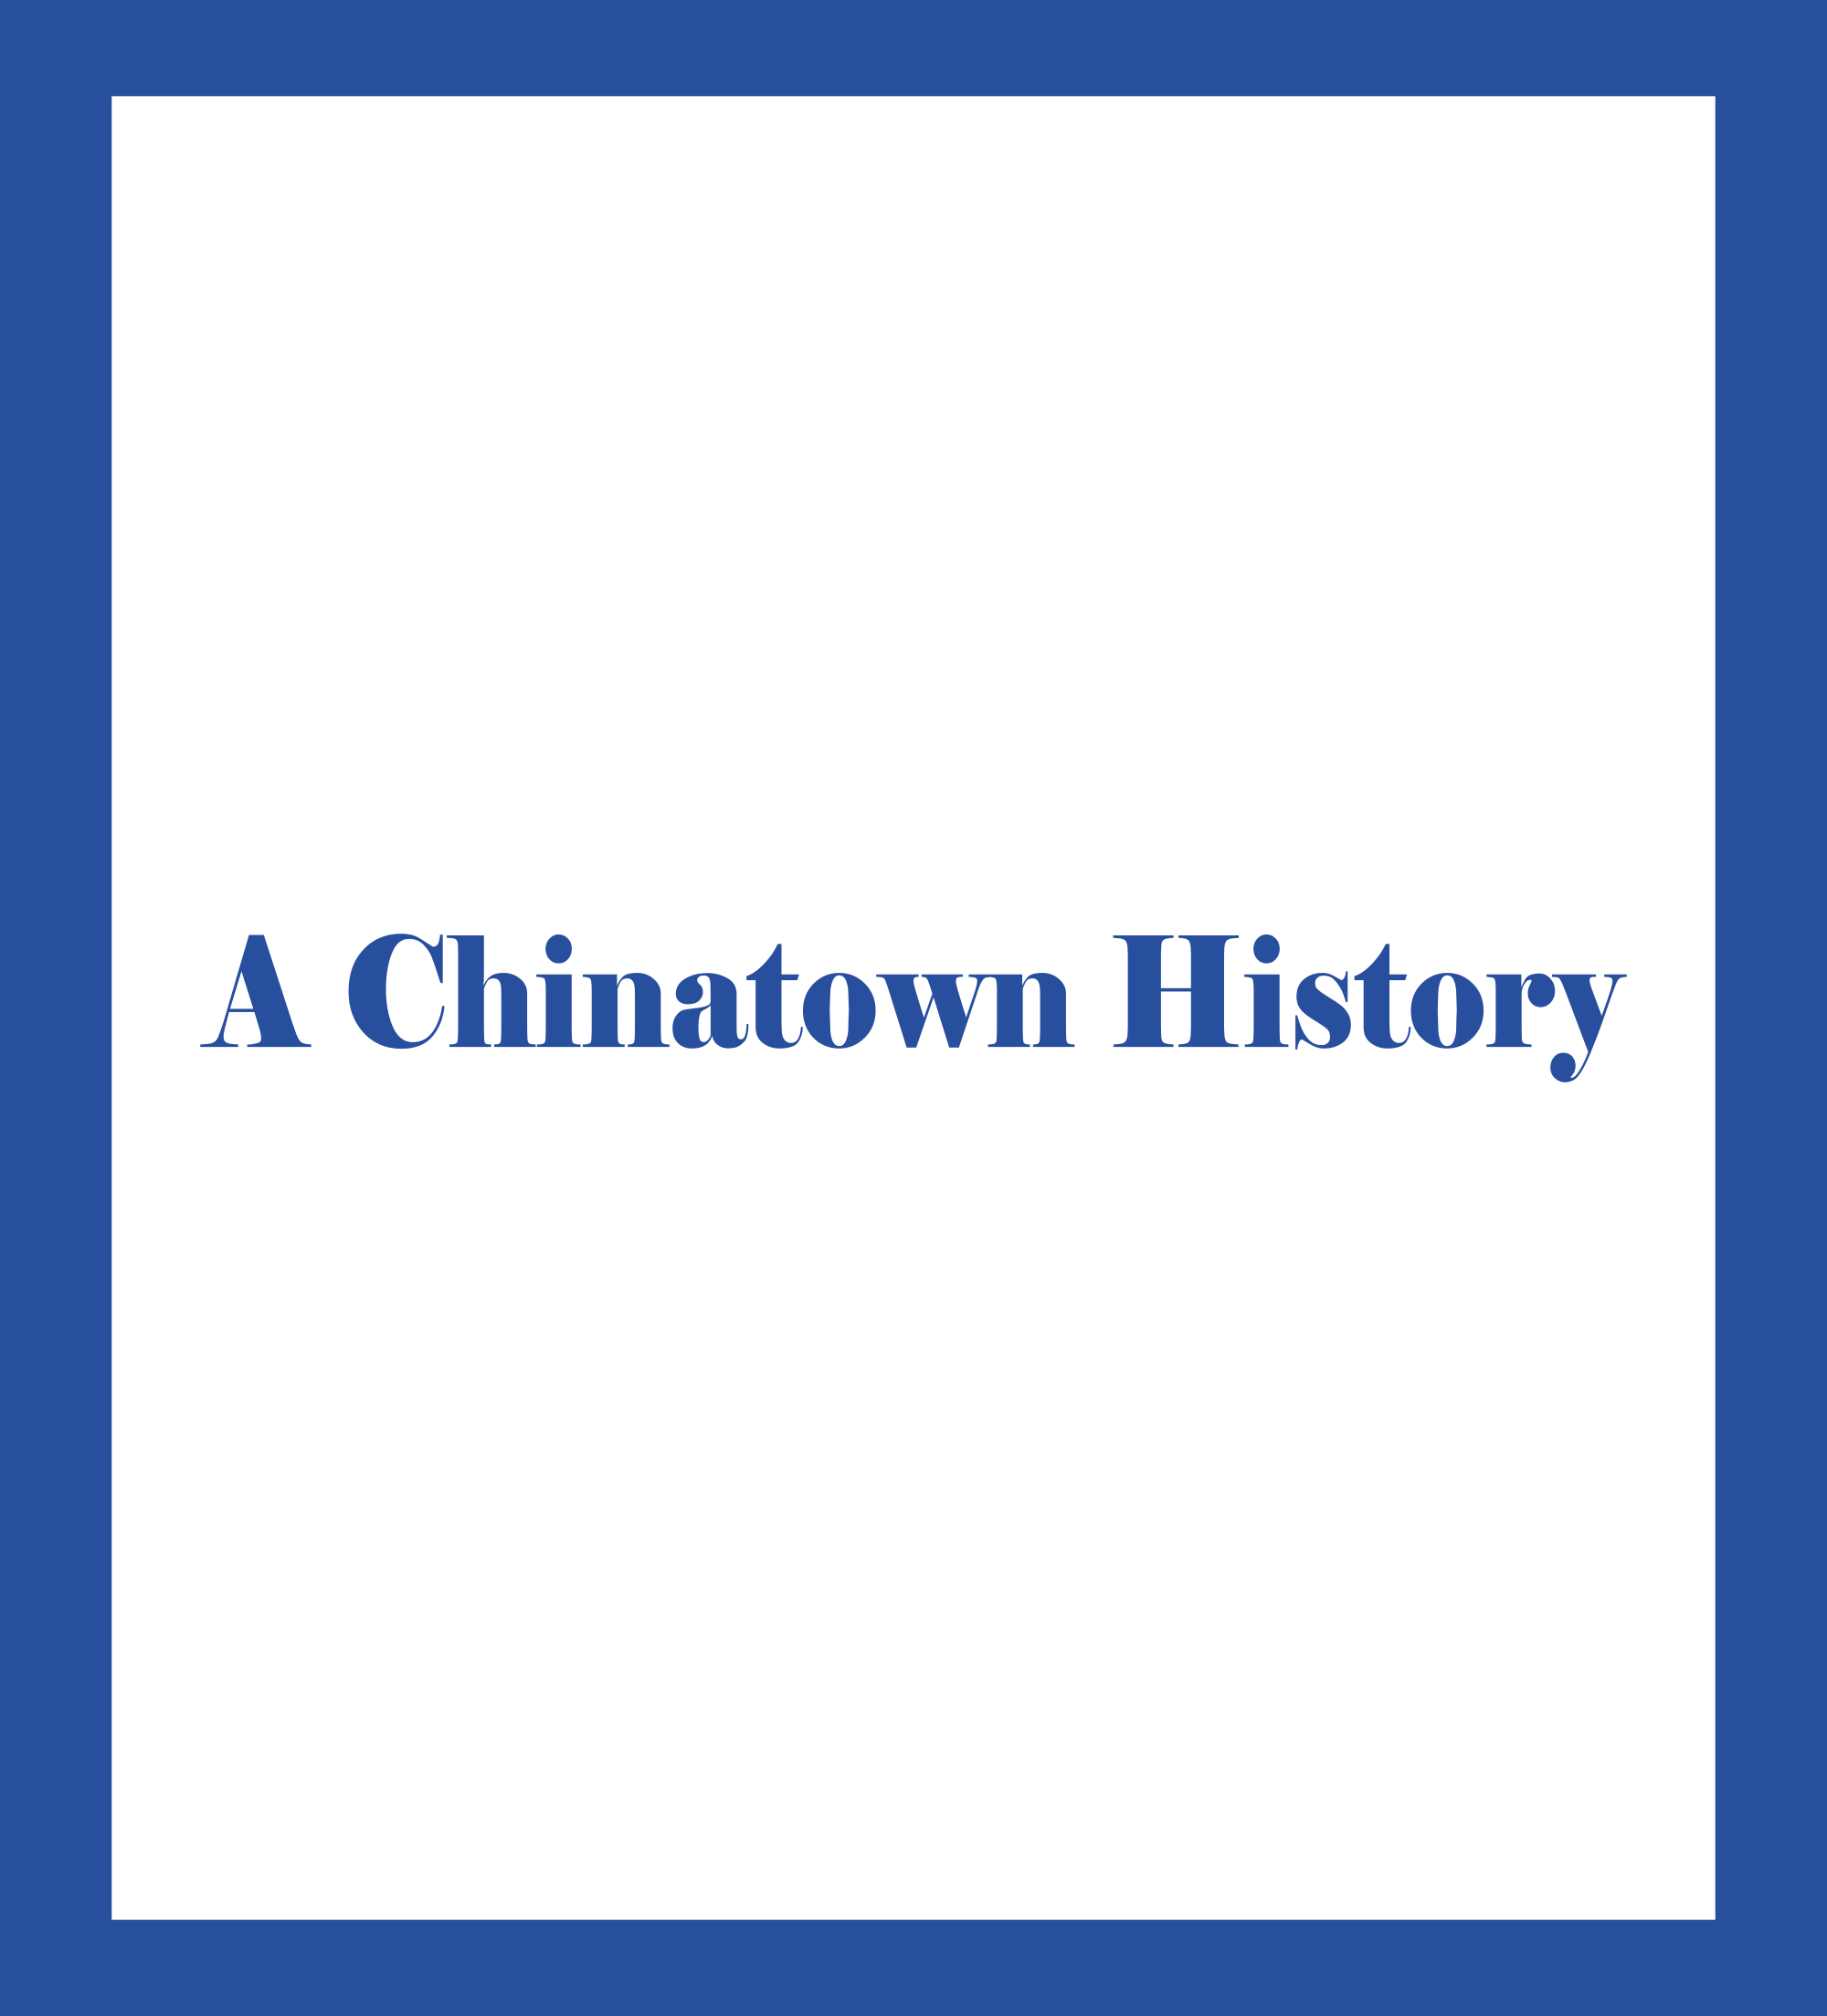 Caratula de A Chinatown History (Una historia de Chinatown) 